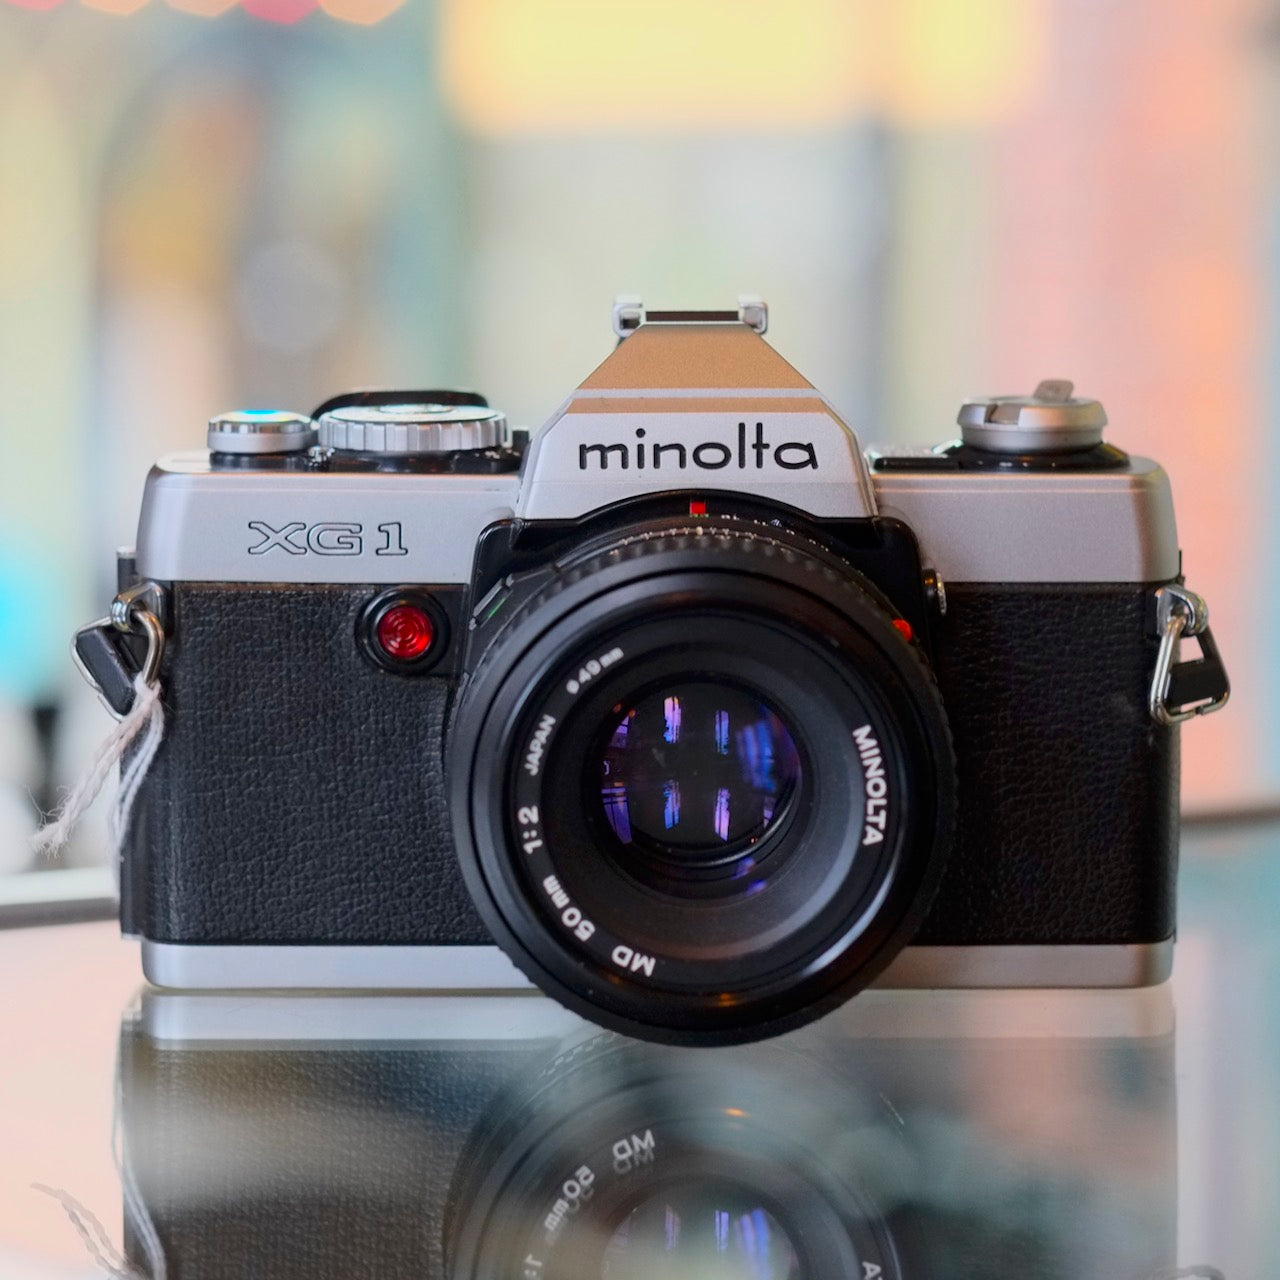 Minolta XG1 with Minolta MD 50mm f2